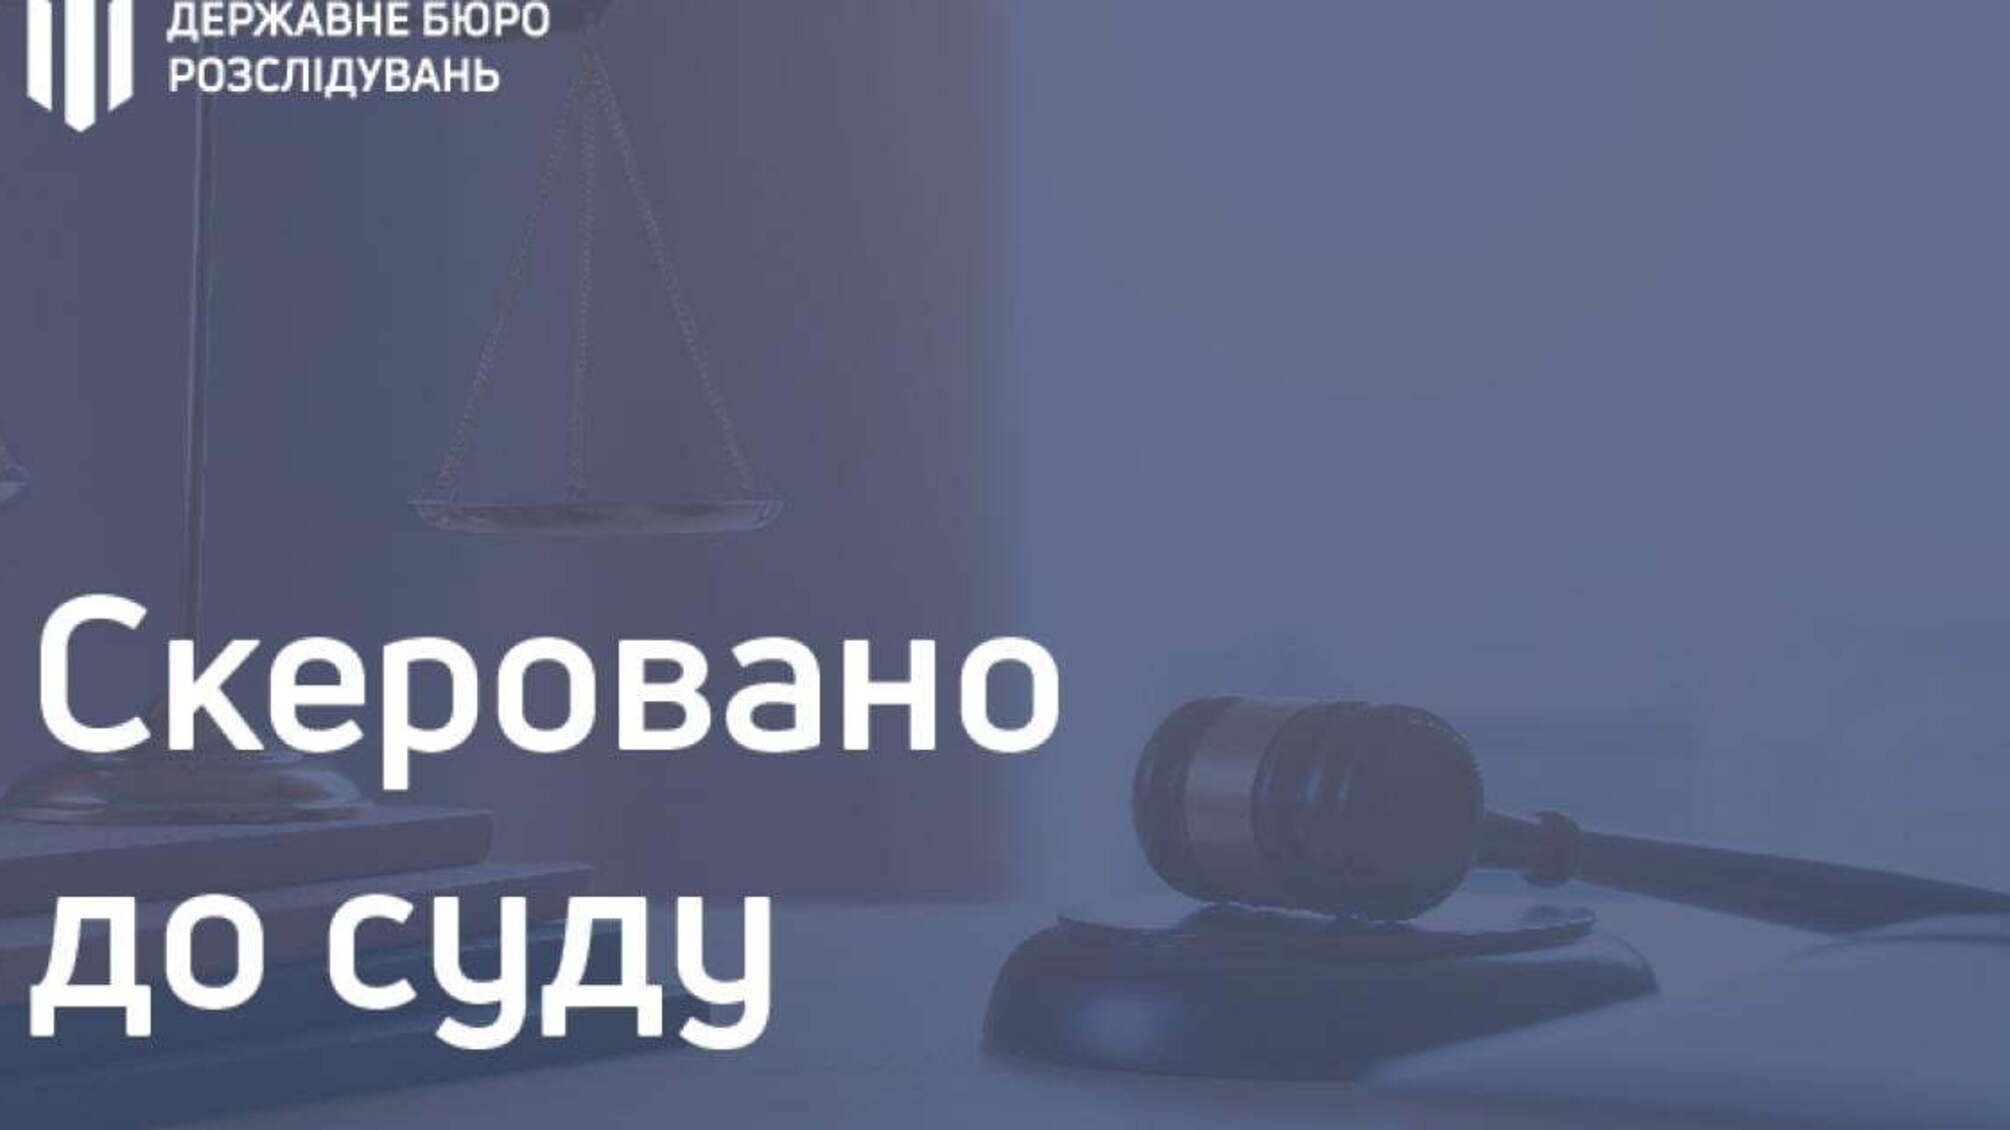 160 000 гривень за «дозвіл» на зайняття проституцією – поліцейські постануть перед судом за одержання неправомірної вигоди